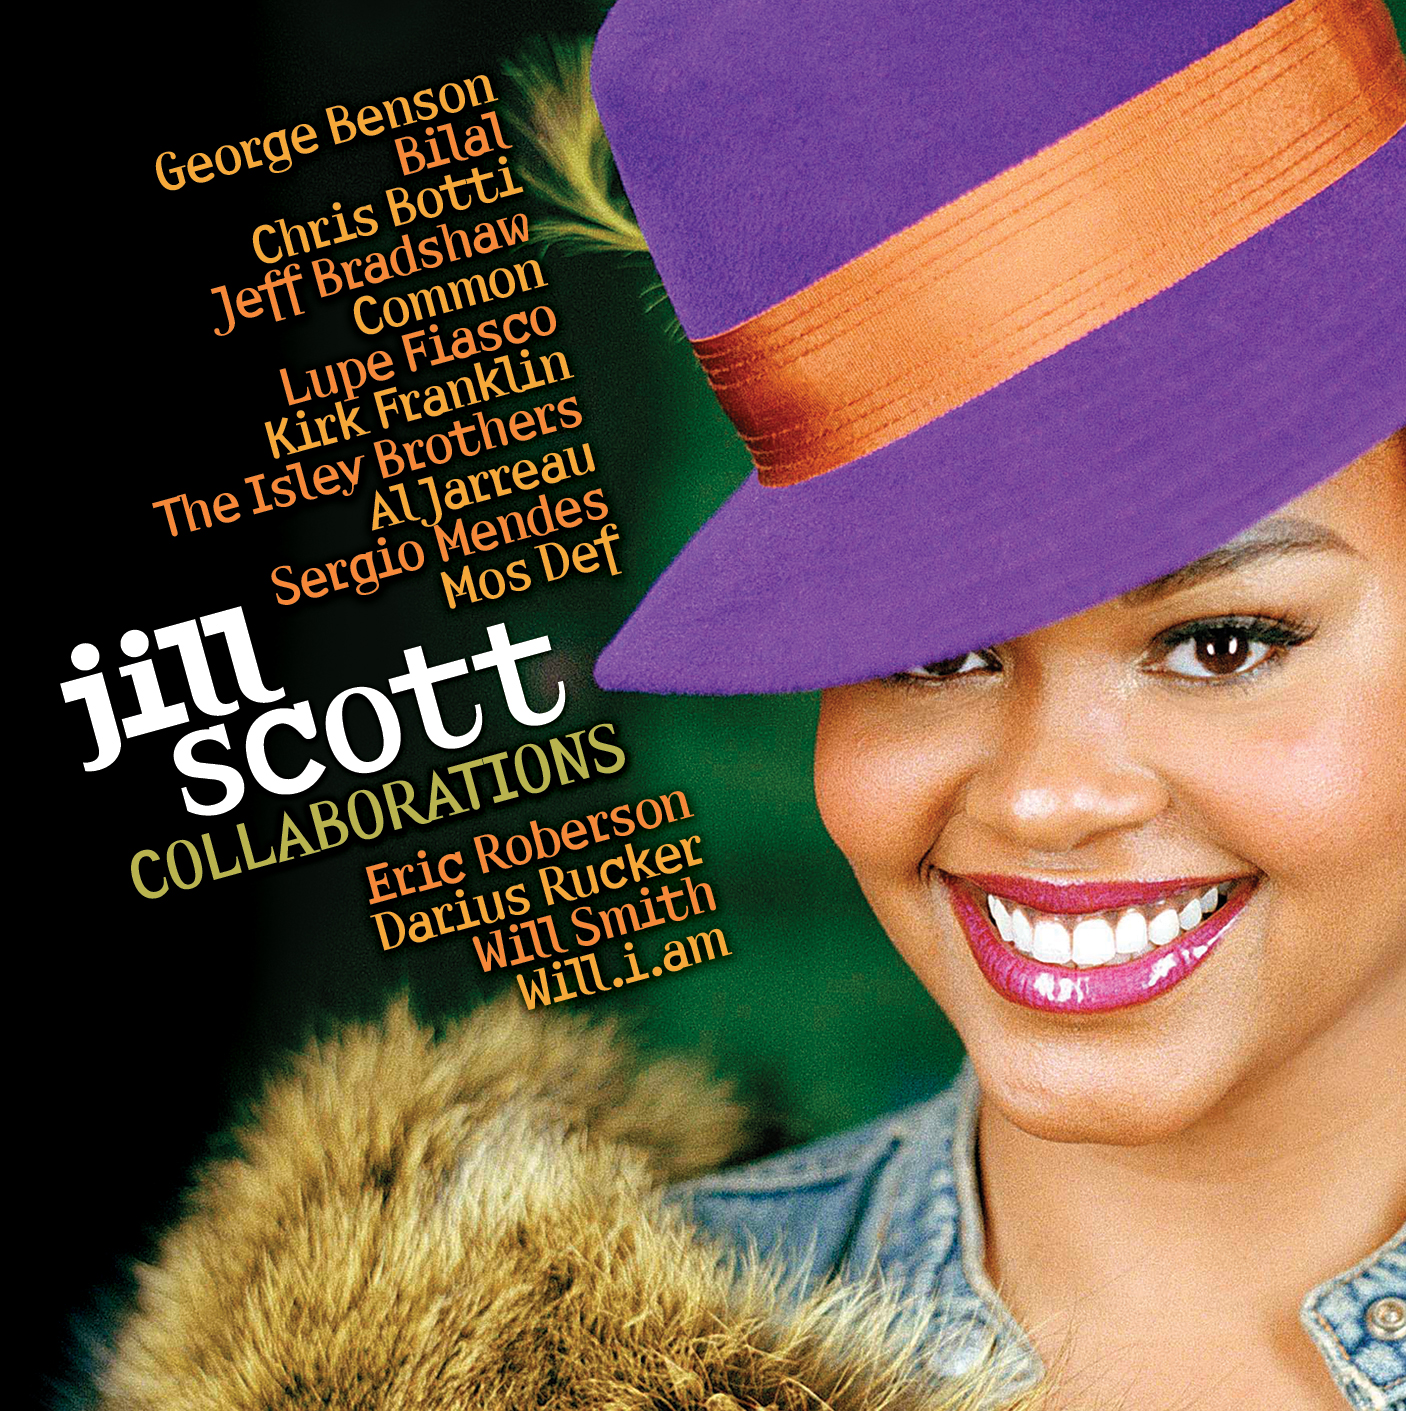 Jill Scott- Collaborations Album cover art